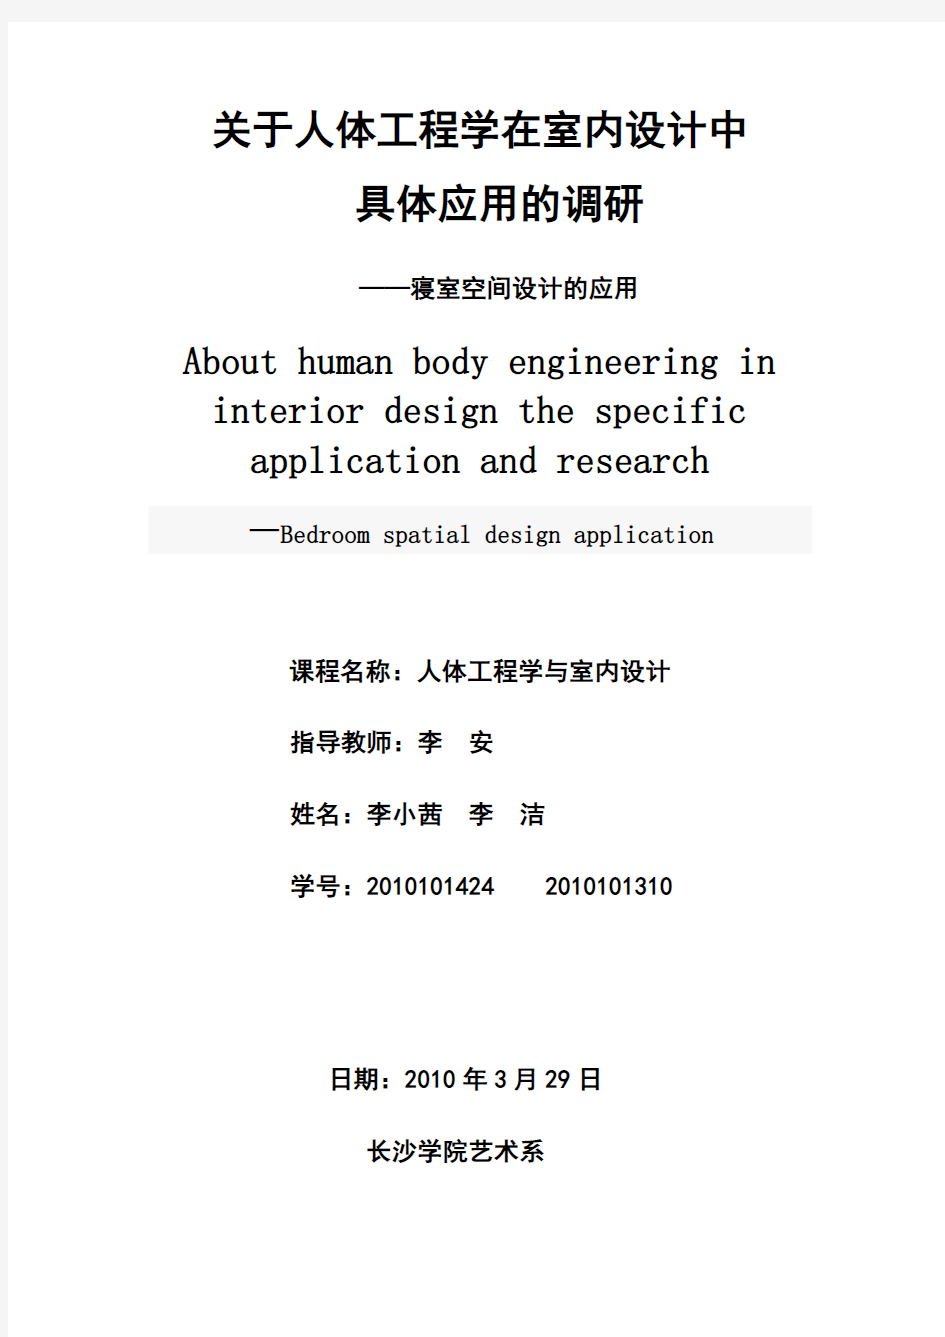 人体工程学与室内设计调查报告 - 副本